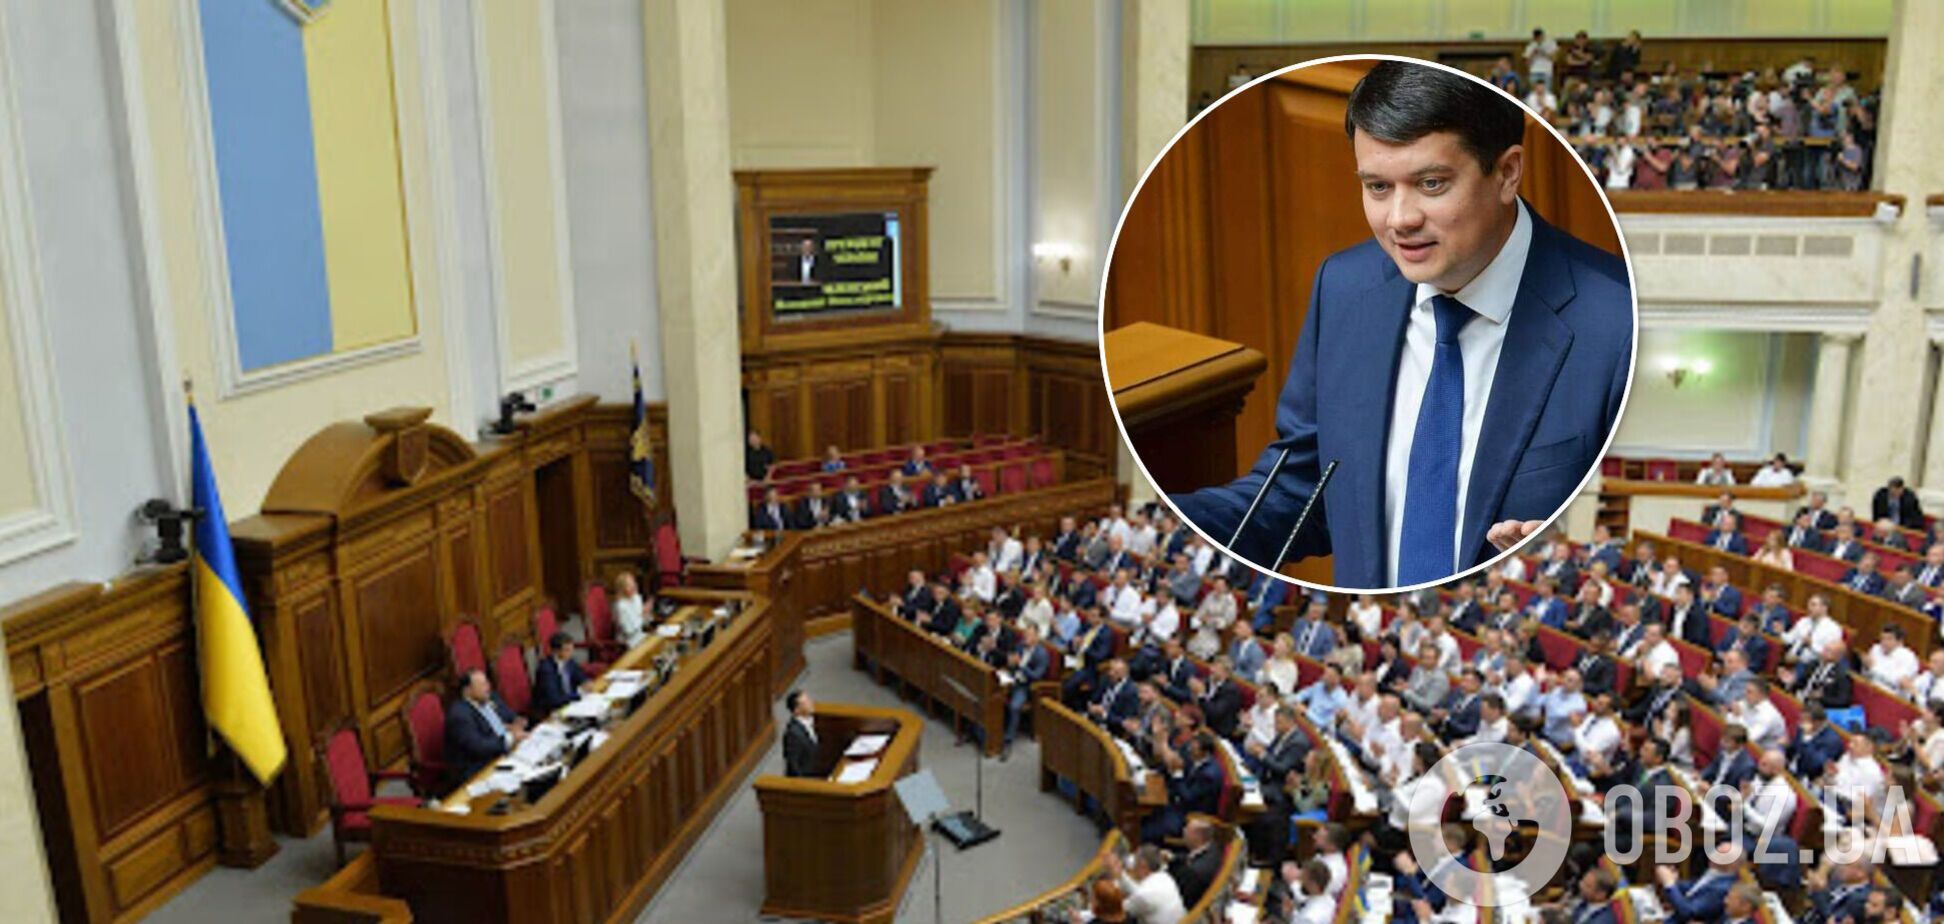 Рада соберется на внеочередное заседание 7 октября: будут ли рассматривать отставку Разумкова